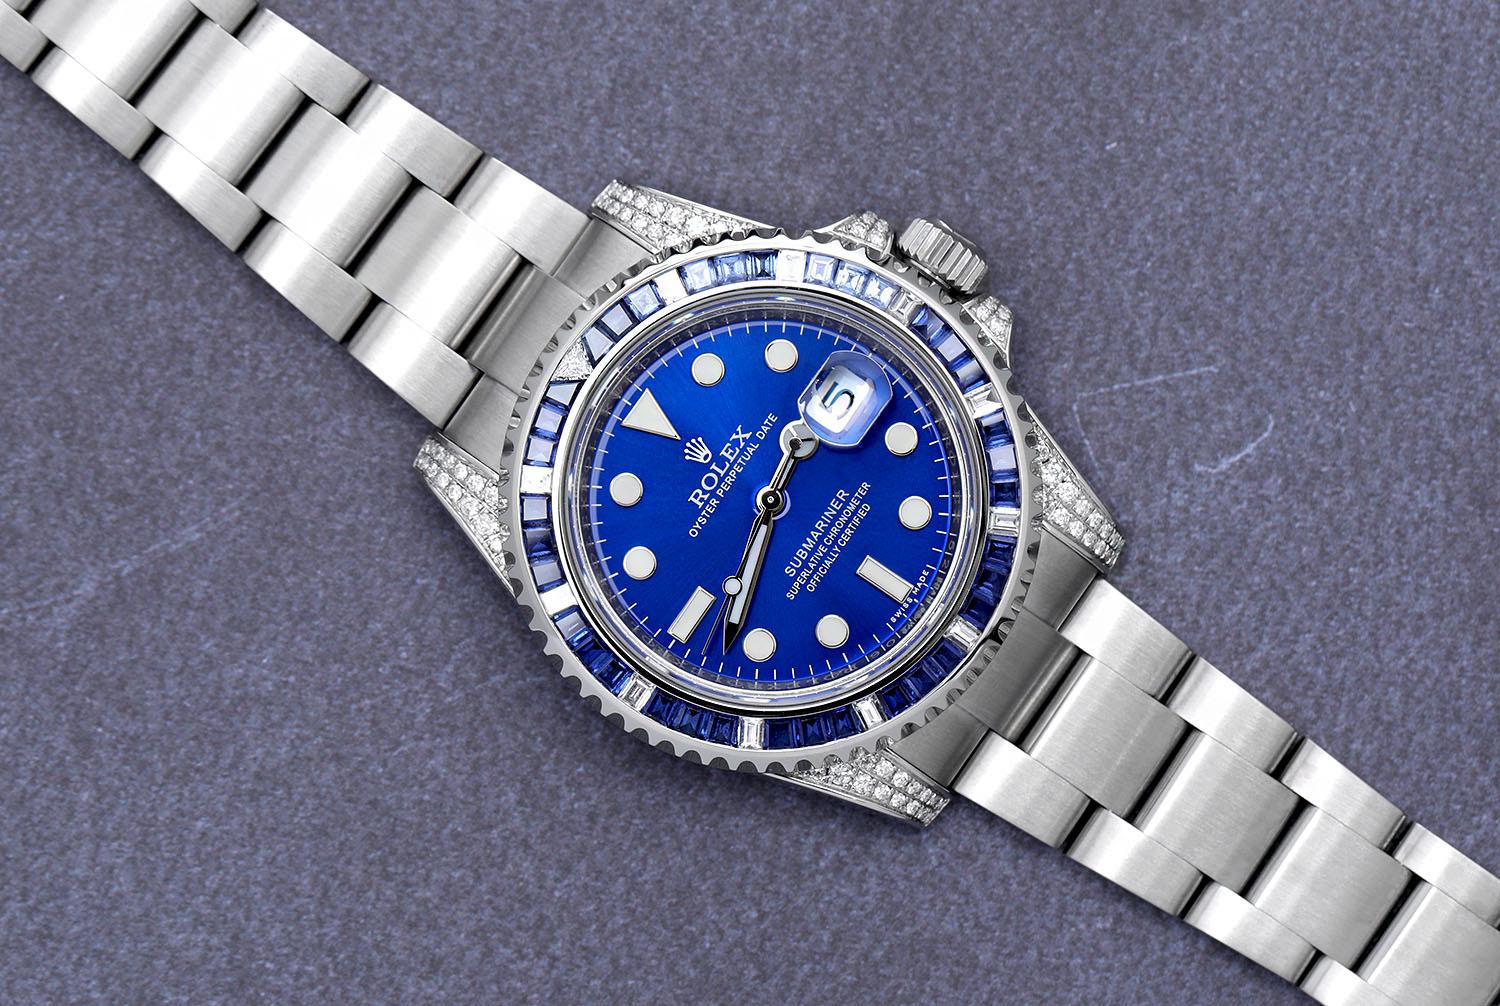 Rolex Submariner Date Custom Diamond Edelstahl Uhr mit Saphir/Diamant Lünette Lugs und blauem Zifferblatt 116610. Die Uhr wurde professionell poliert und wurde nach der Anpassung nie getragen. Es gibt absolut KEINE sichtbaren Kratzer oder